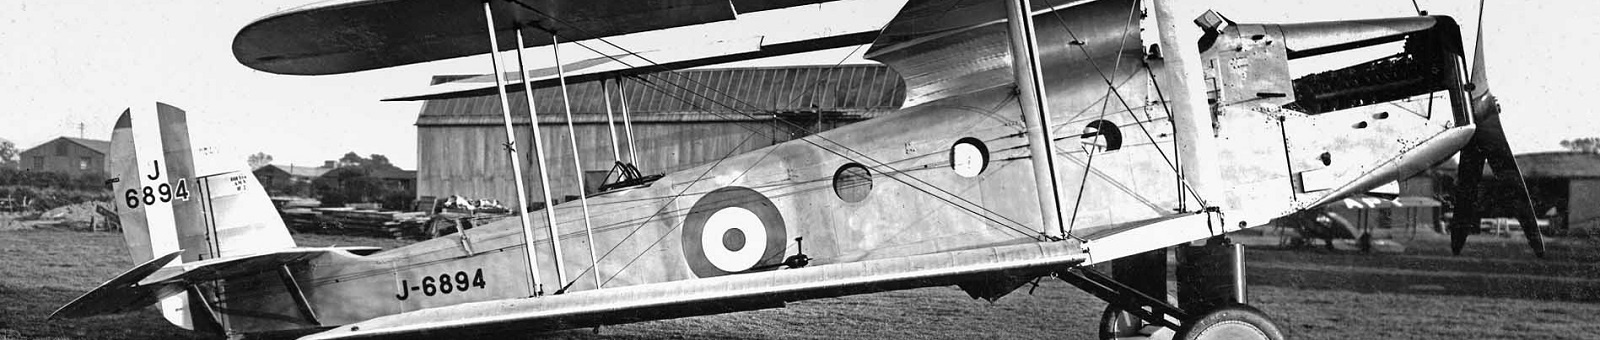 De Havilland DH27 Derby 